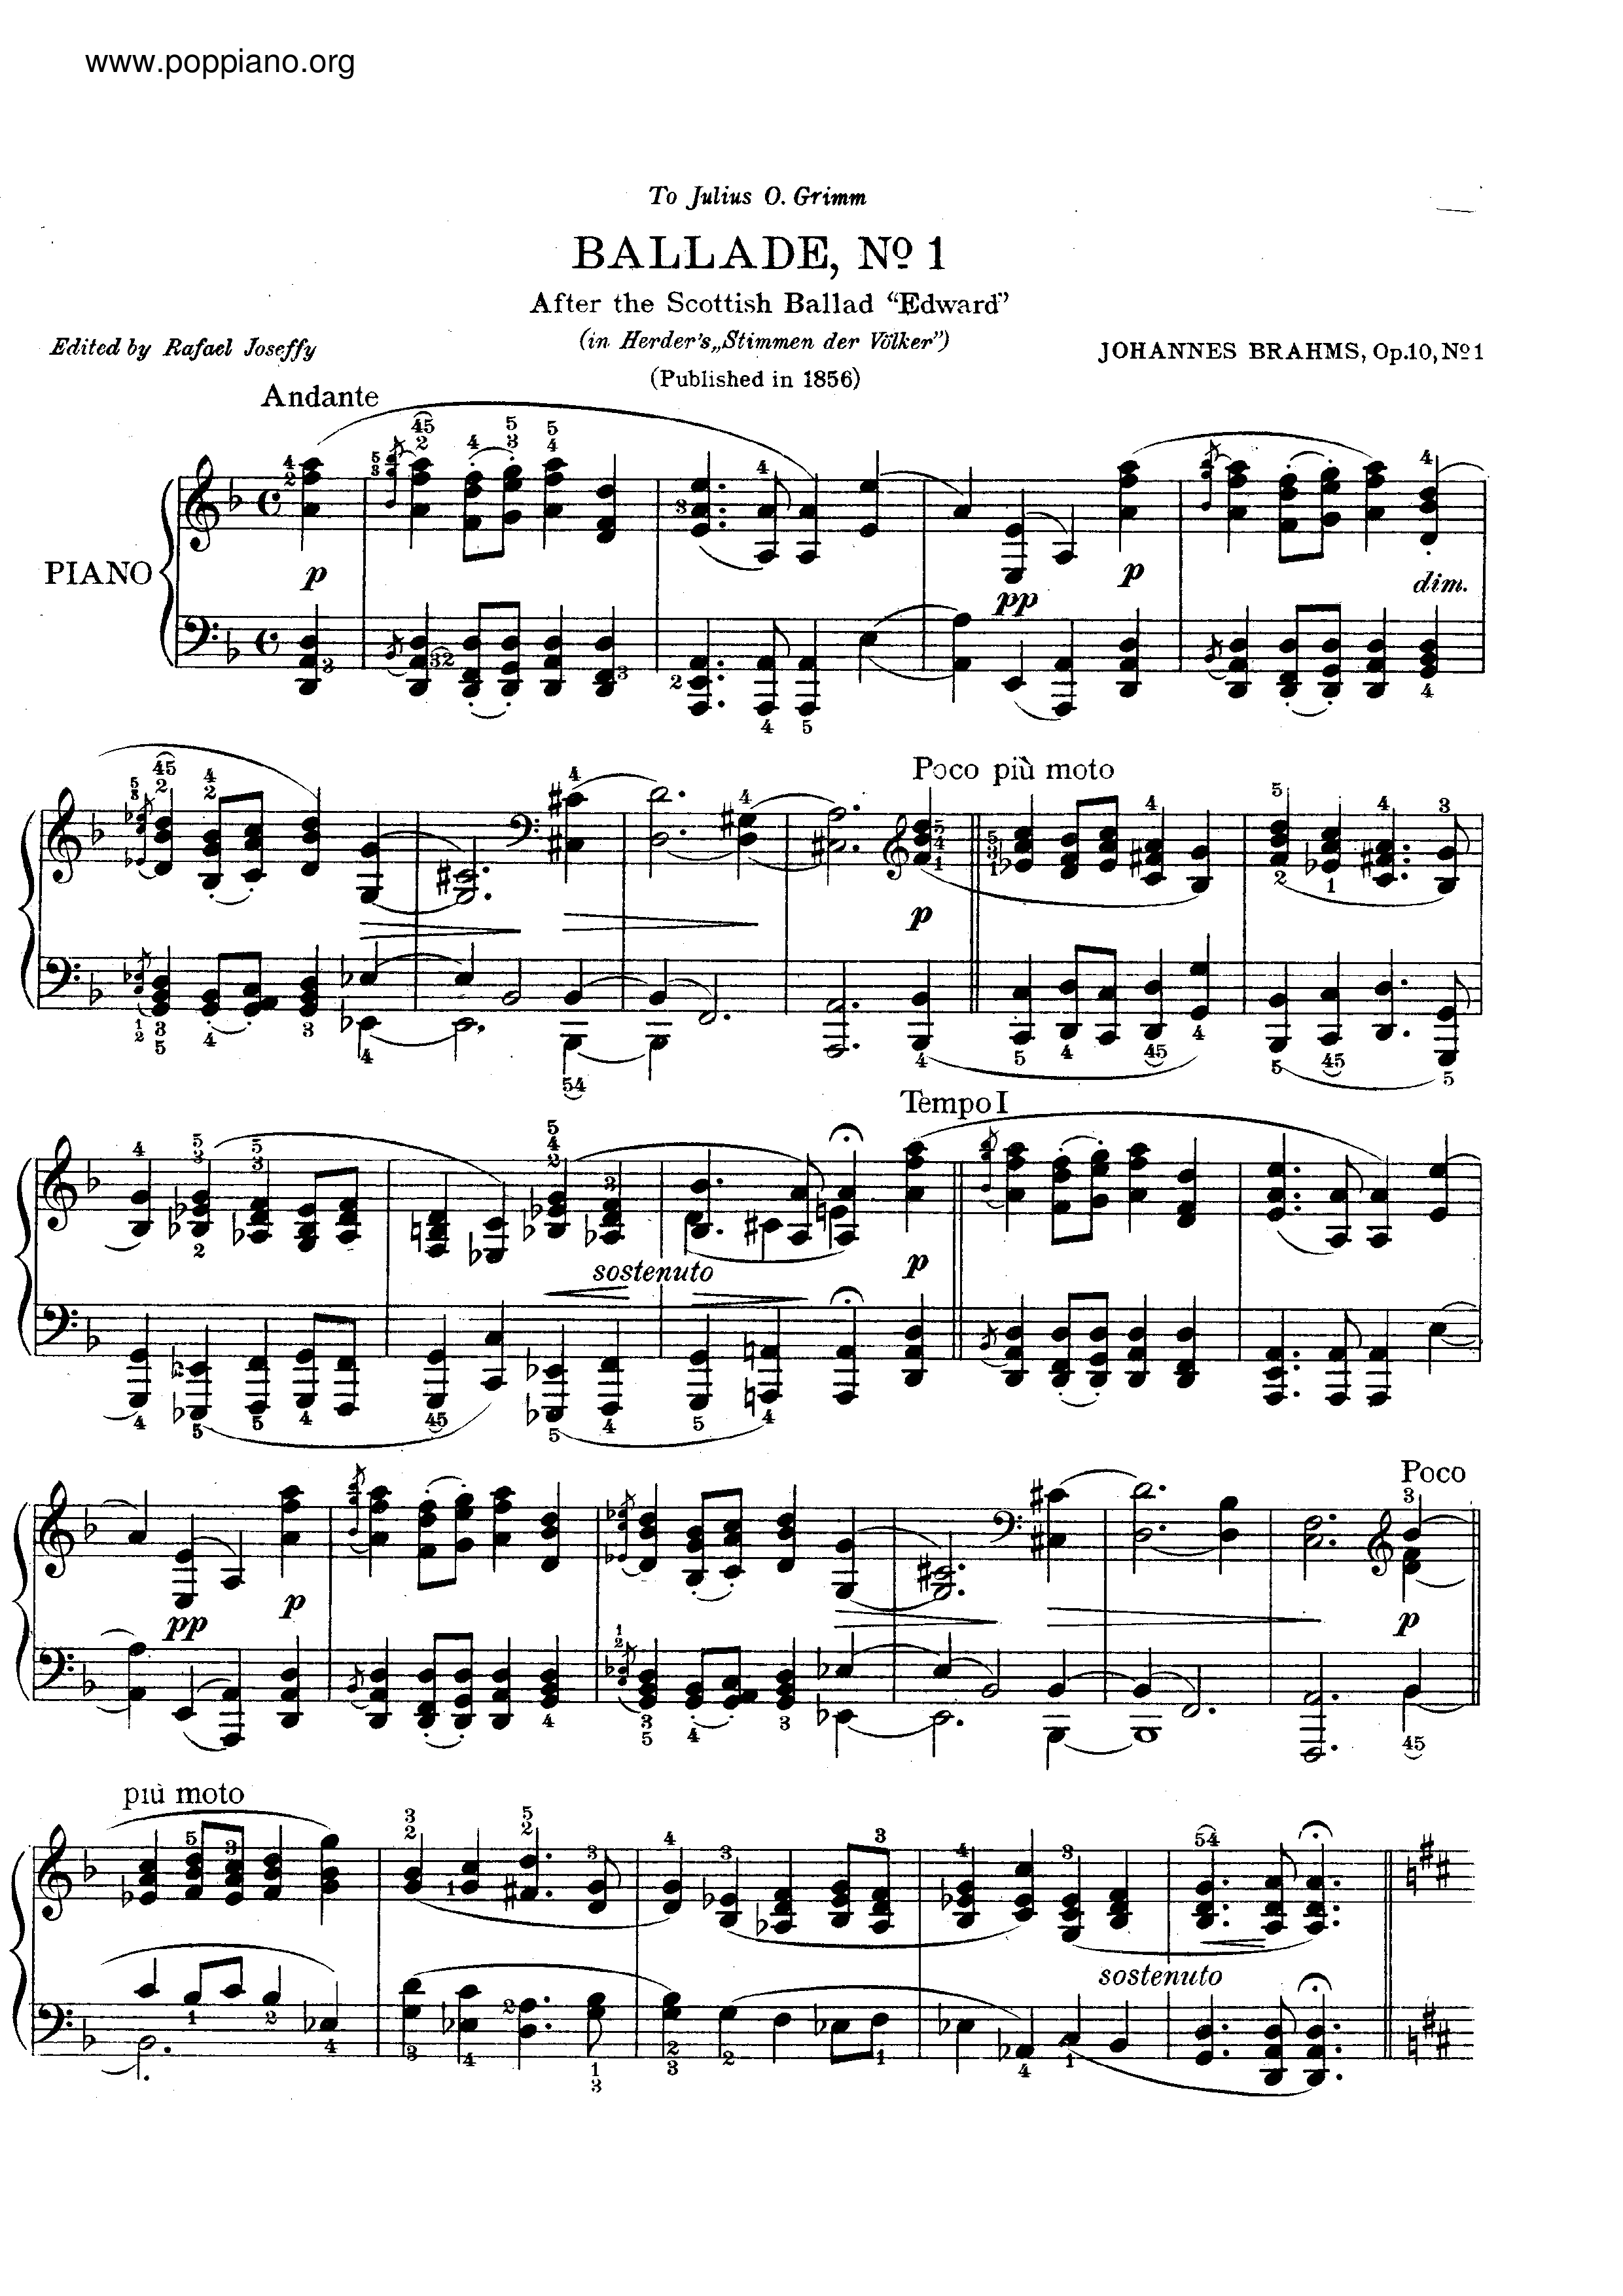 No. 1 in D minor. Andante琴譜